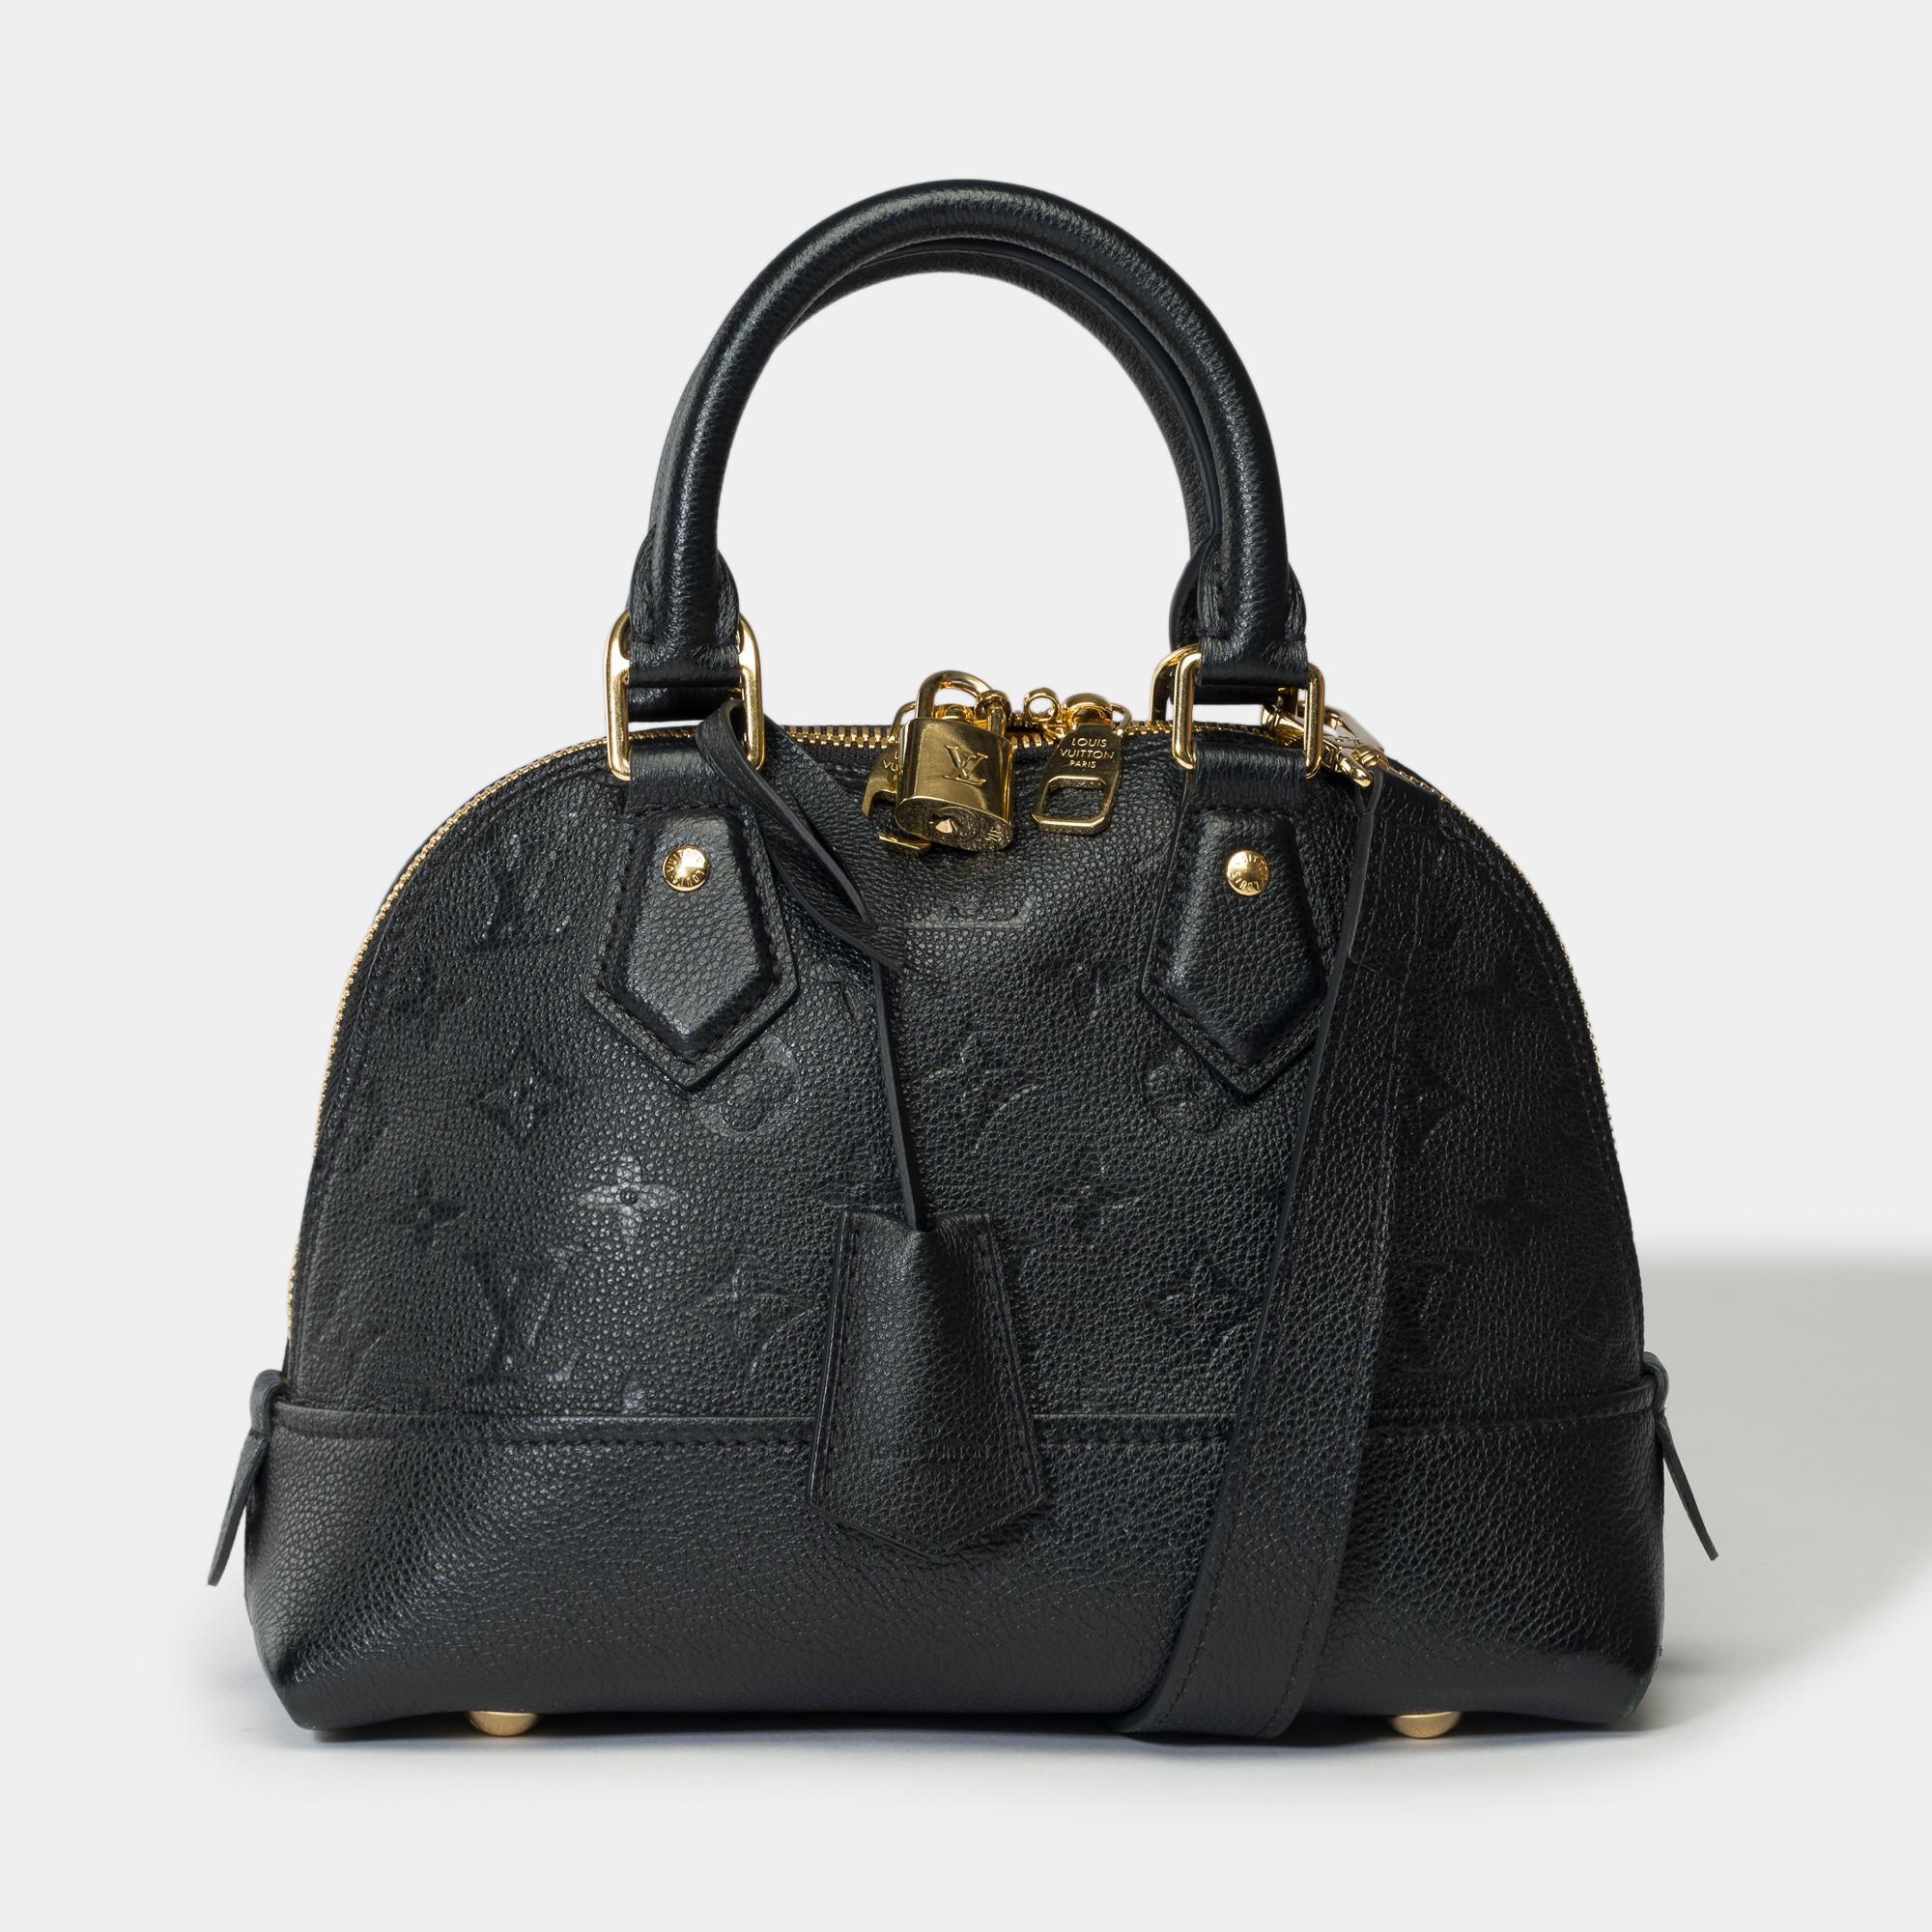 Schöner Neo Alma PM Handtaschenriemen aus schwarzem Kalbsleder mit Monogrammen. Sie hat runde Griffe an der Oberseite, einen abnehmbaren Schulterriemen und ein helles, kontrastierendes Futter. Die kultigen Details von Louis Vuitton, wie das